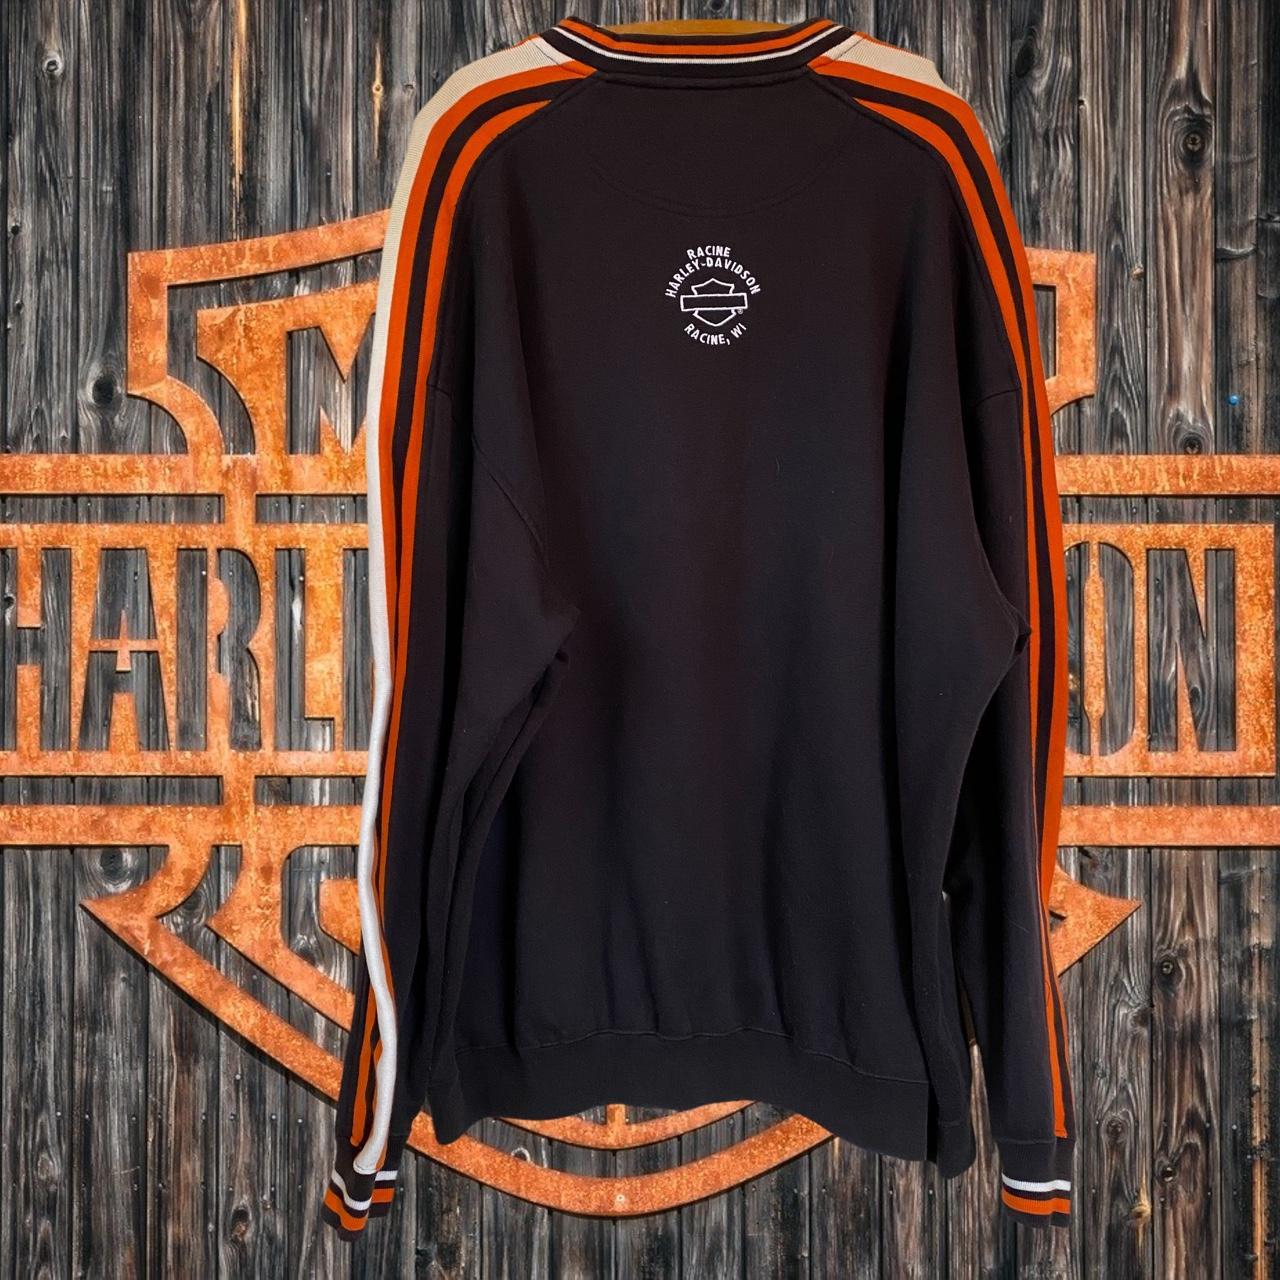 Harley Davidson Men's Black and Orange Jumper (2)